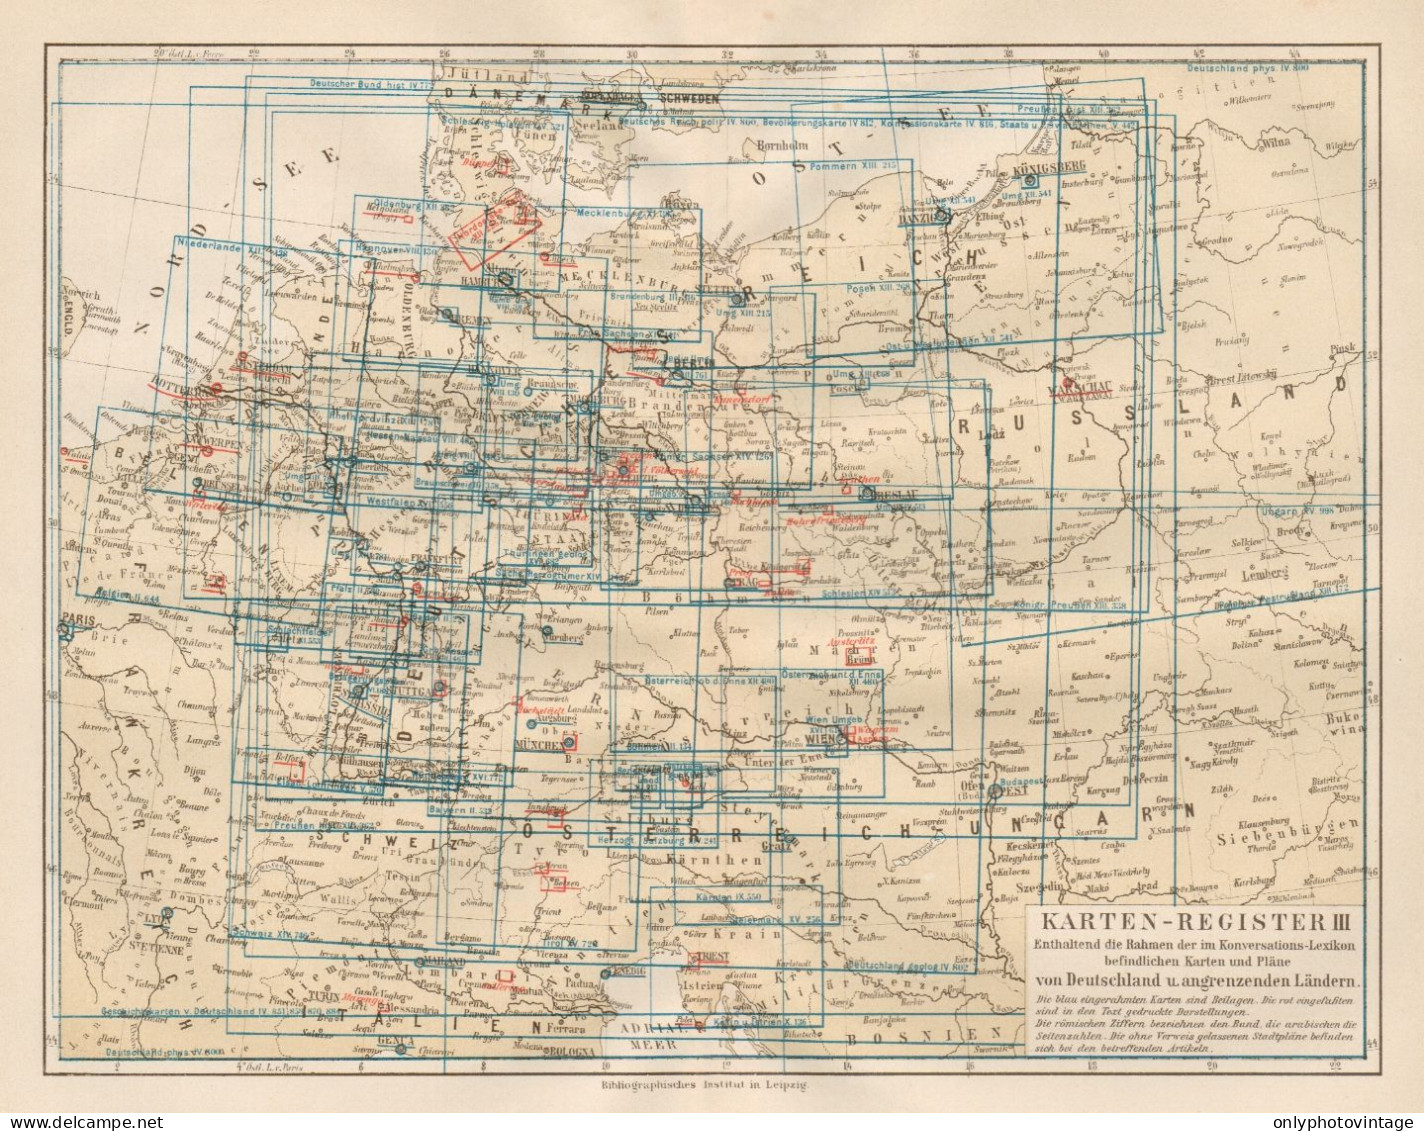 B6161 Karten Register III - Carta Geografica Antica Del 1890 - Old Map - Geographische Kaarten